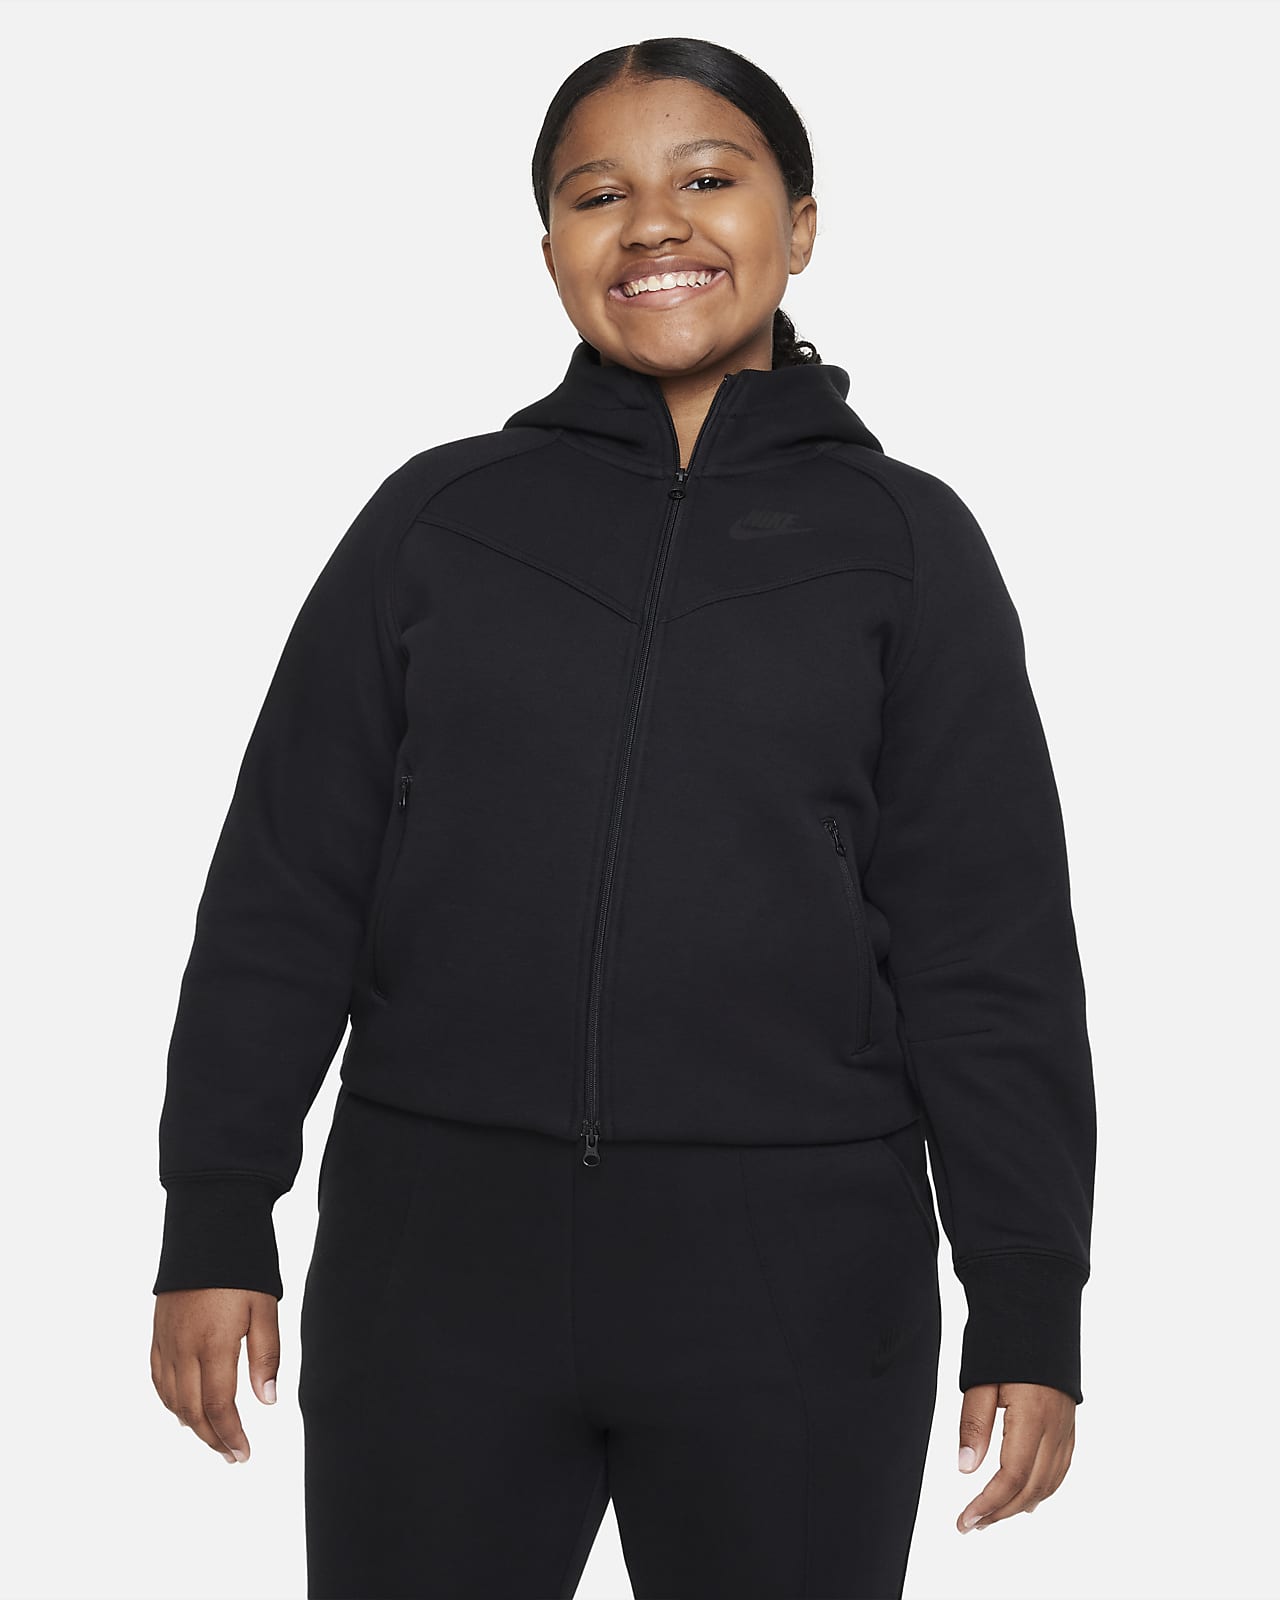 Mikina Nike Sportswear Tech Fleece s kapucí pro větší děti (dívky) a zipem po celé délce (rozšířená velikost)